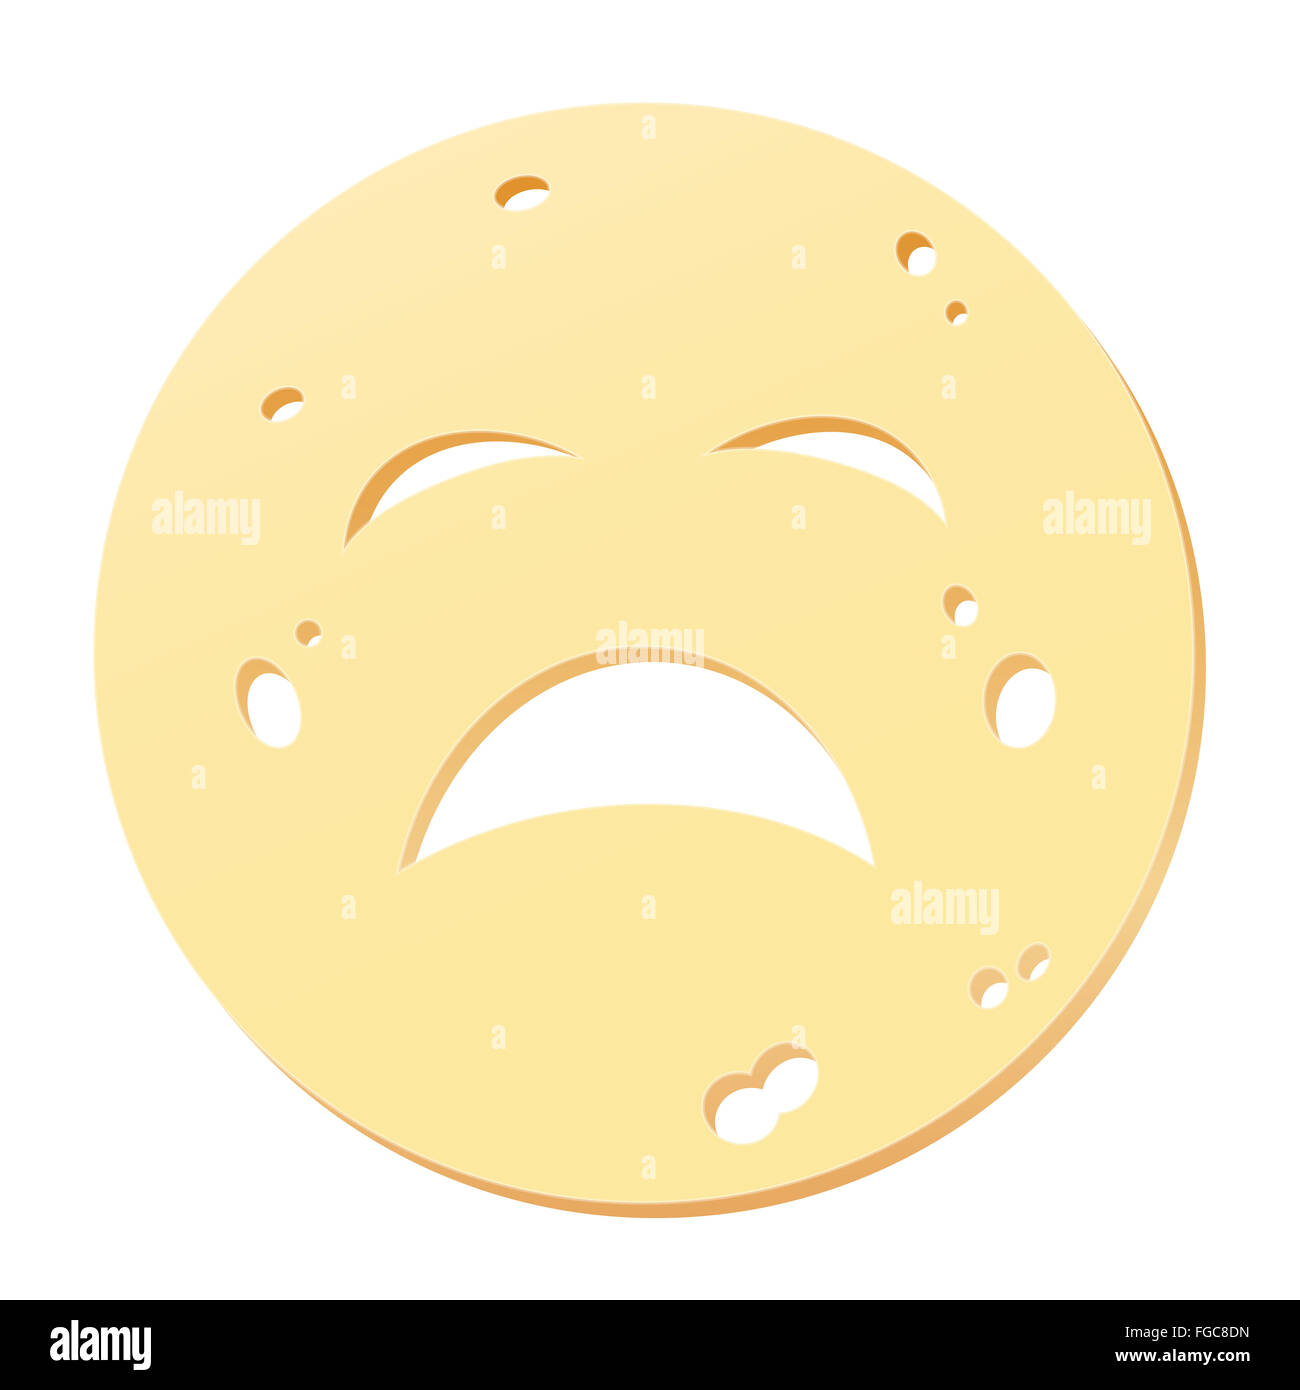 Rodaja de queso con cara triste - símbolo de alergénicos, nociva, insalubre o rancio de la nutrición. Foto de stock